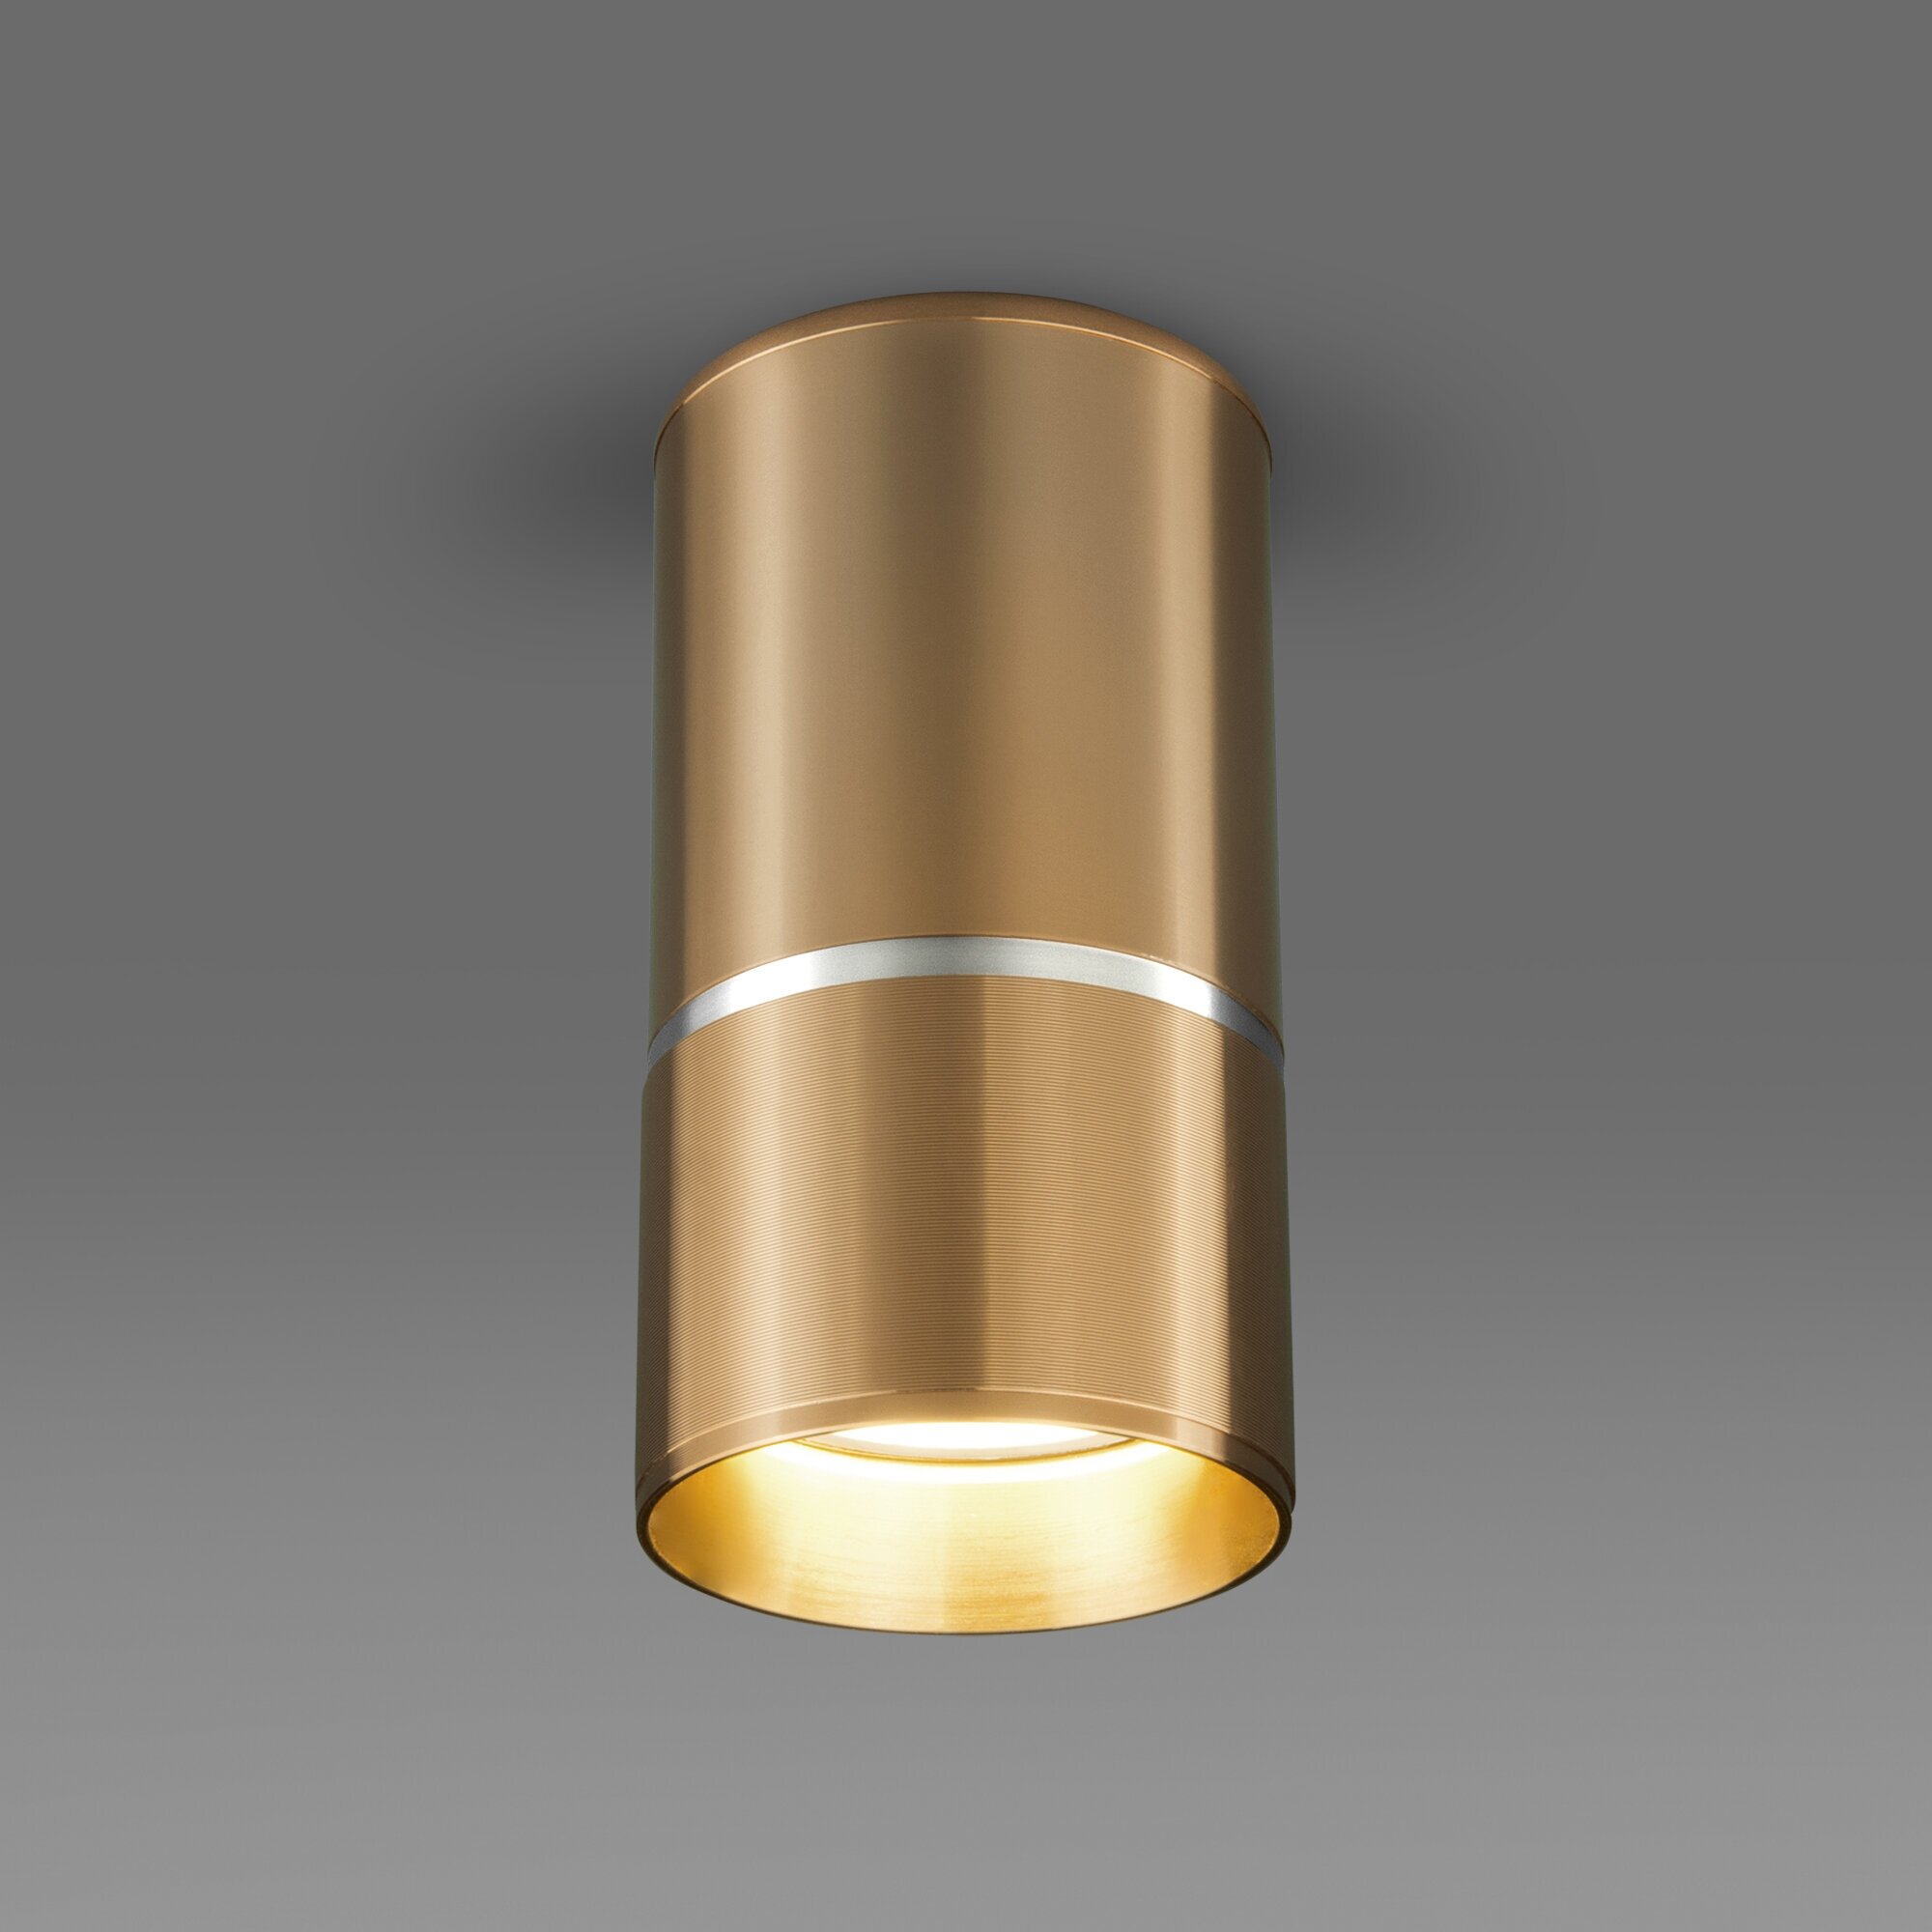 Спот / Накладной потолочный светильник Elektrostandard DLN106, GU10, цвет золото